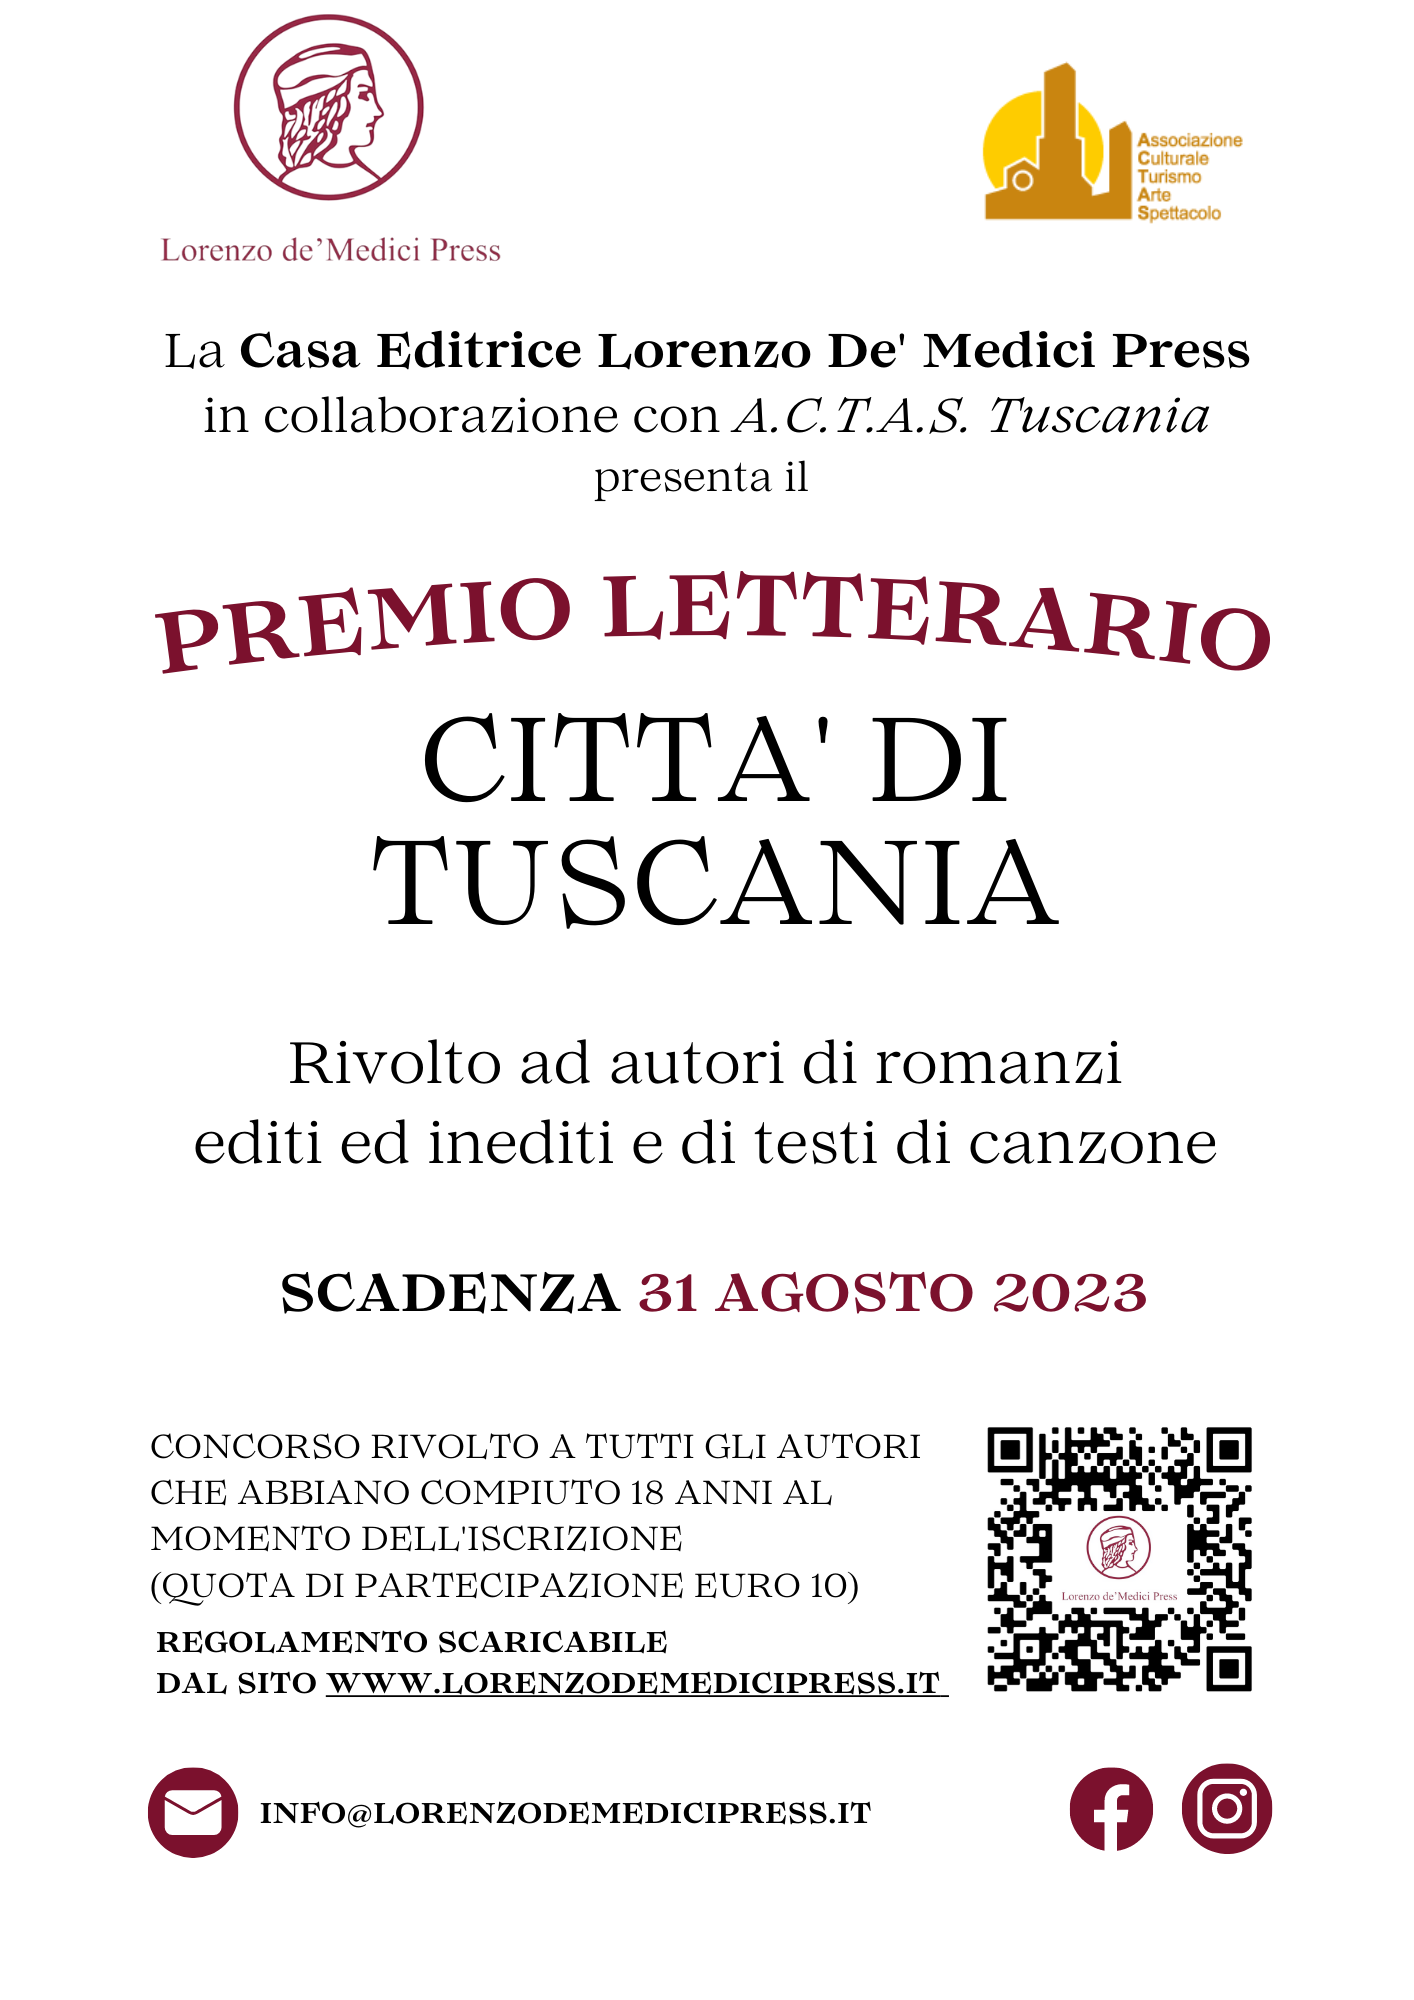 Premio letterario Città di Tuscania